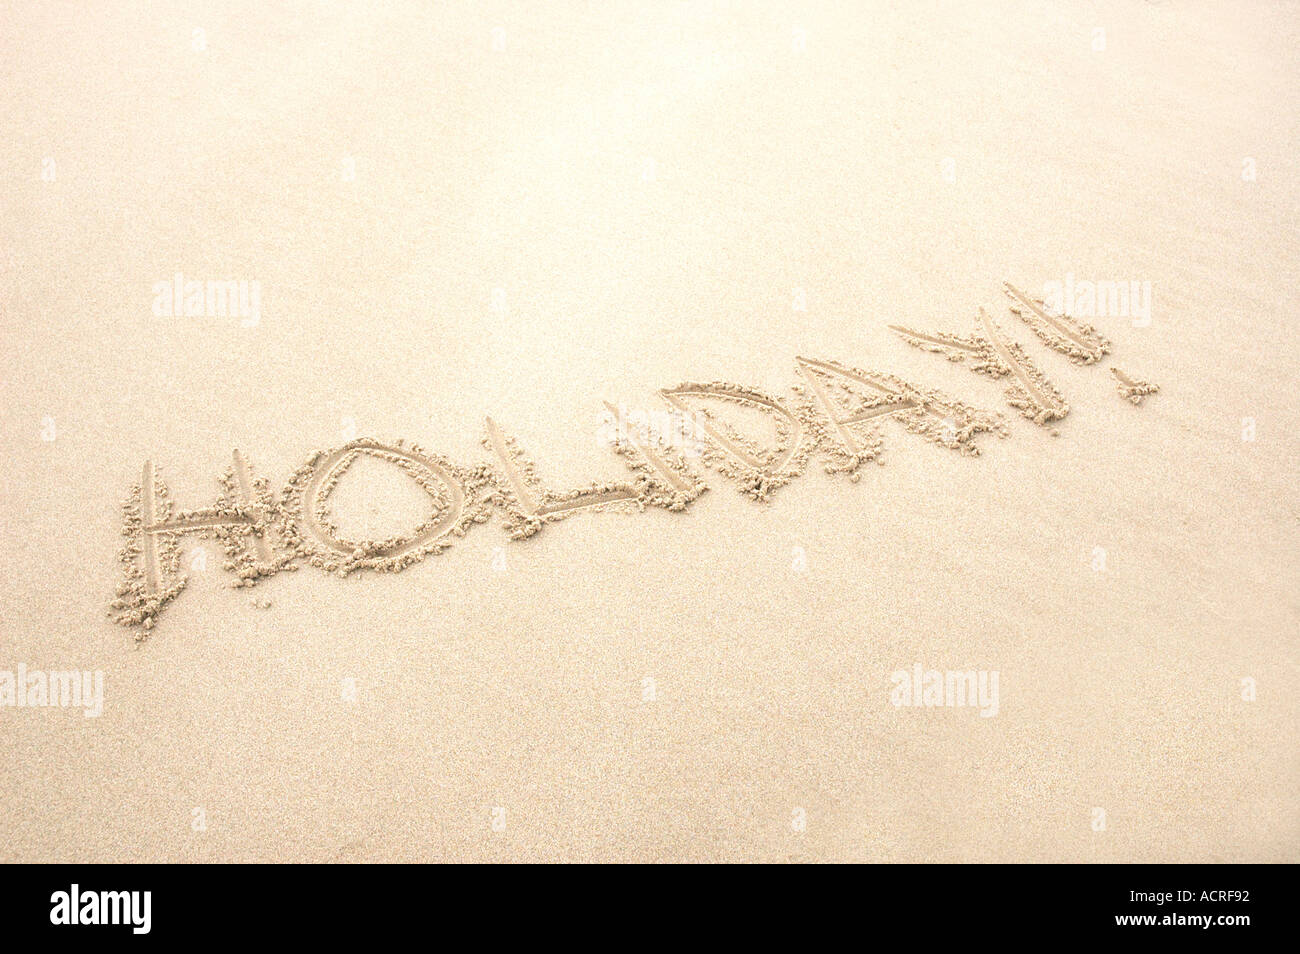 Wort-Urlaub in Sand am Strand geschrieben Stockfoto